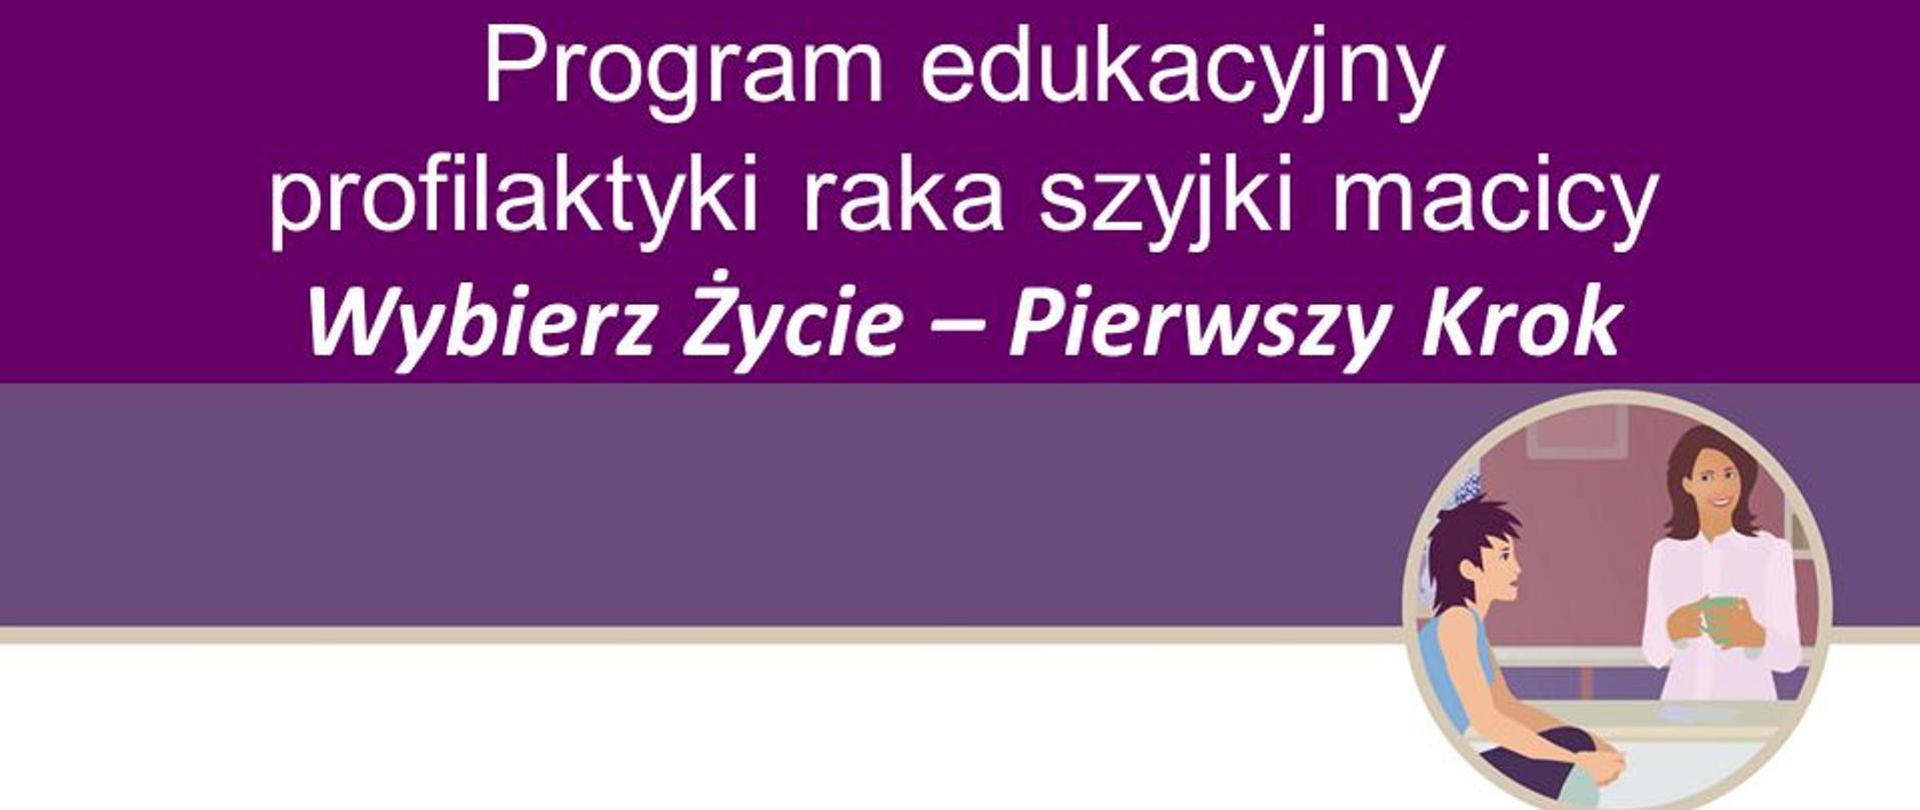 Program edukacyjny - "Wybierz Życie - Pierwszy Krok" - tytuł programu na liliowym tle